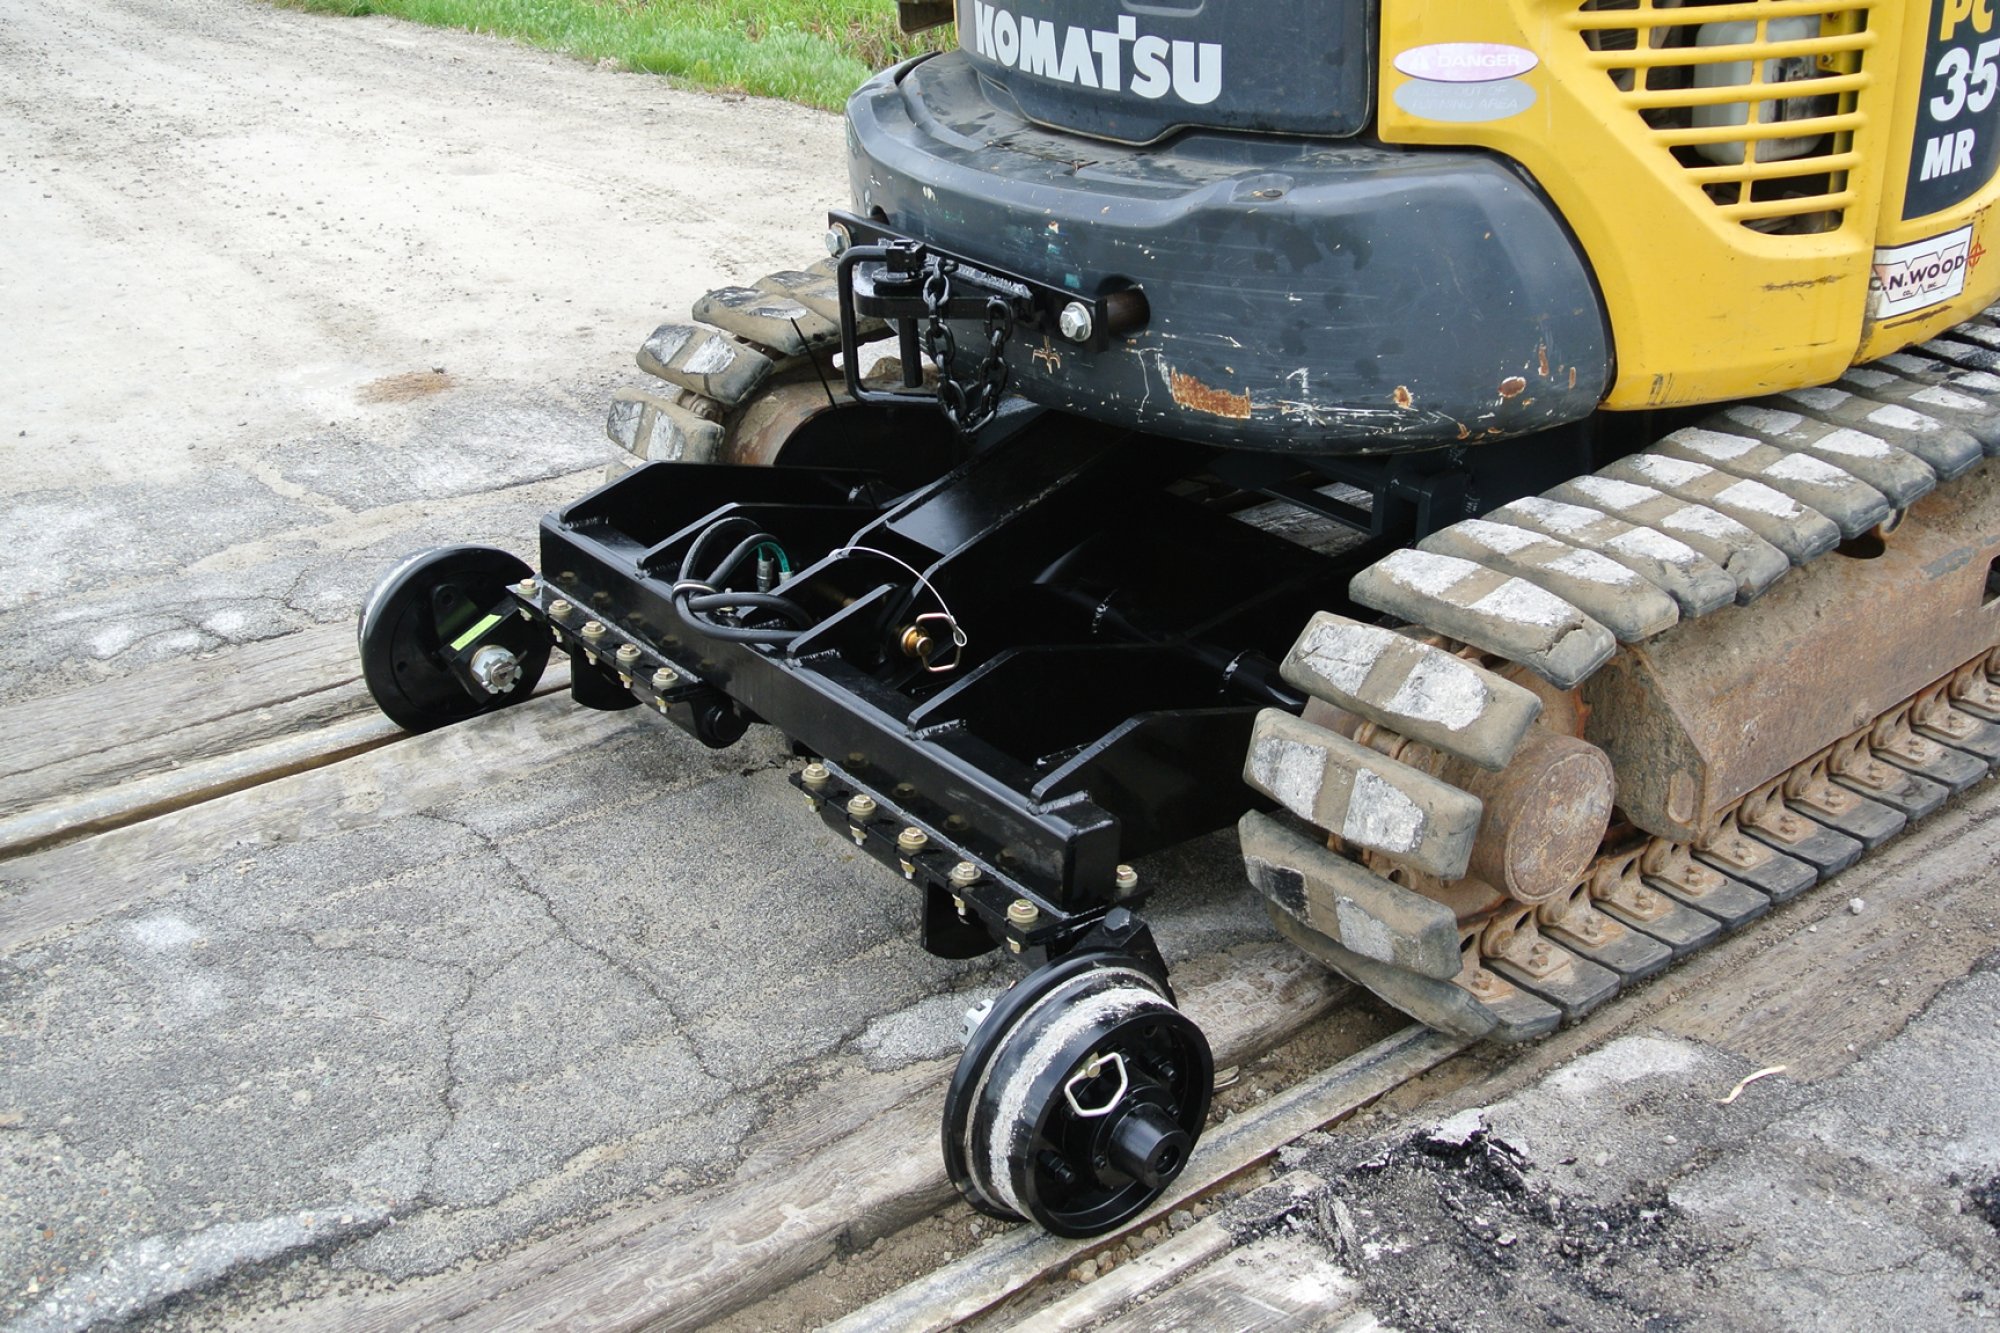 3333 Rail Gear for Mini Rubber Track Excavator - Non Driving